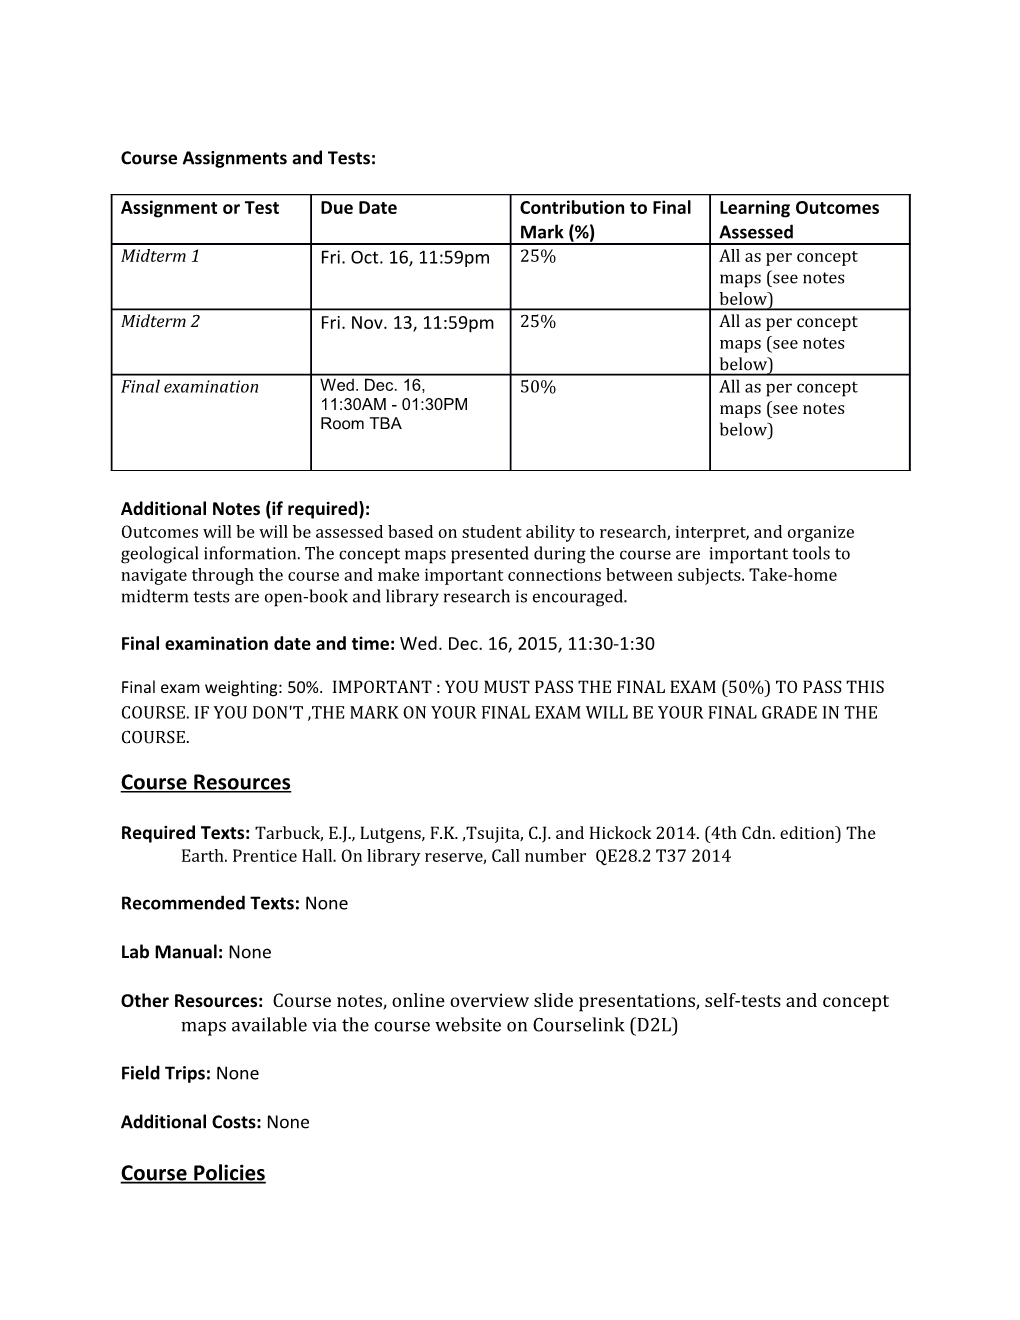 Undergraduate Course Outline Form: Fall 2015